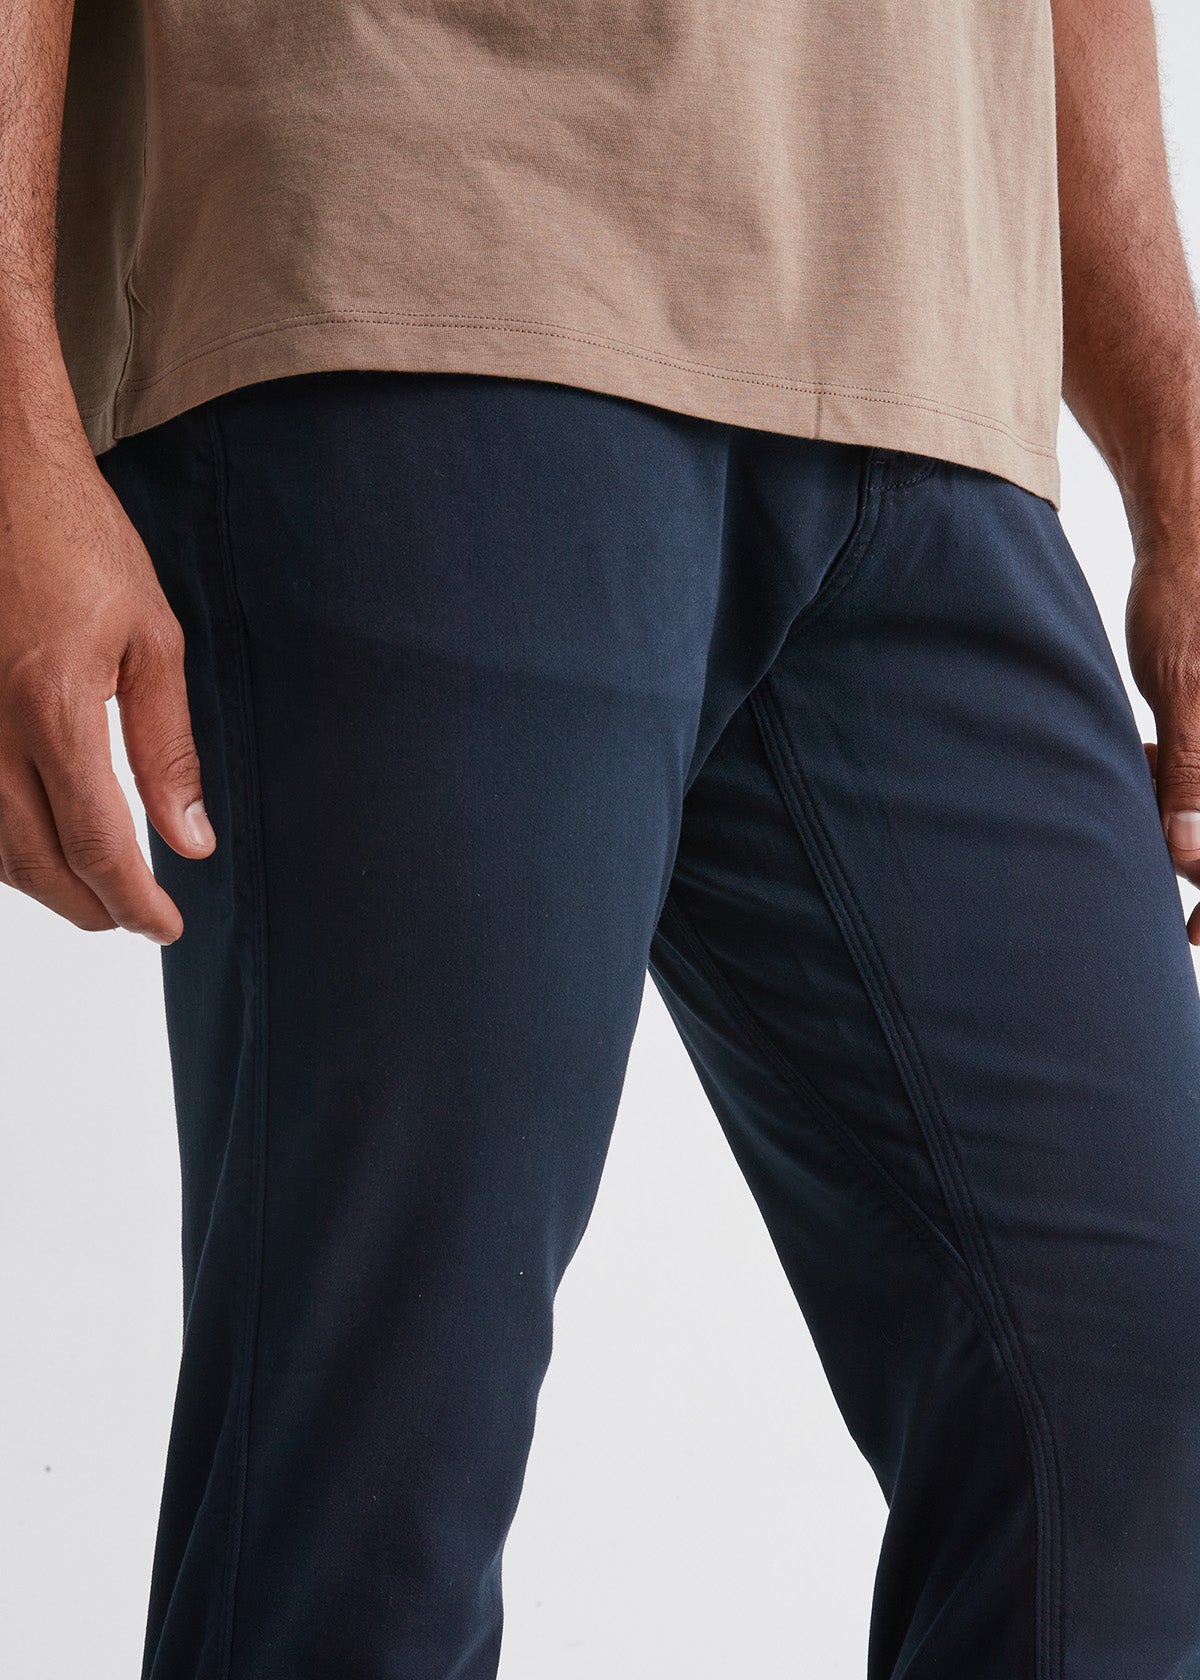 Men's Cotton Blue Plain Casual Pant, Size: 28.0-36 at Rs 350/piece